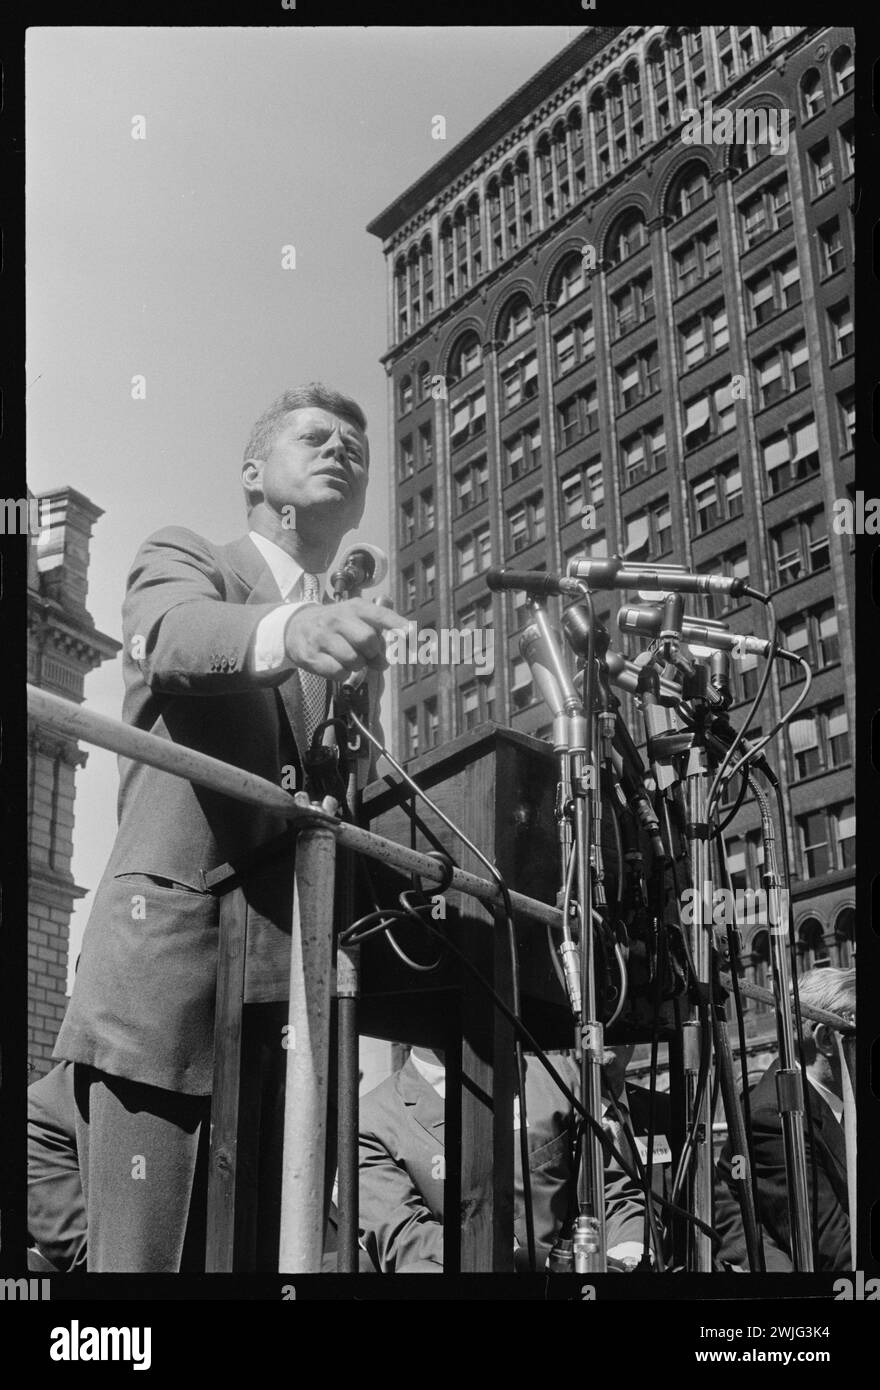 Senator John F. Kennedy sprach bei einer Kundgebung am Labor Day auf dem Cadillac Square während seines Präsidentschaftswahlkampfes am 6. September 1960 in Detroit, Michigan. (Foto: Thomas O'Halloran/US News and World Report Magazine Collection) Stockfoto